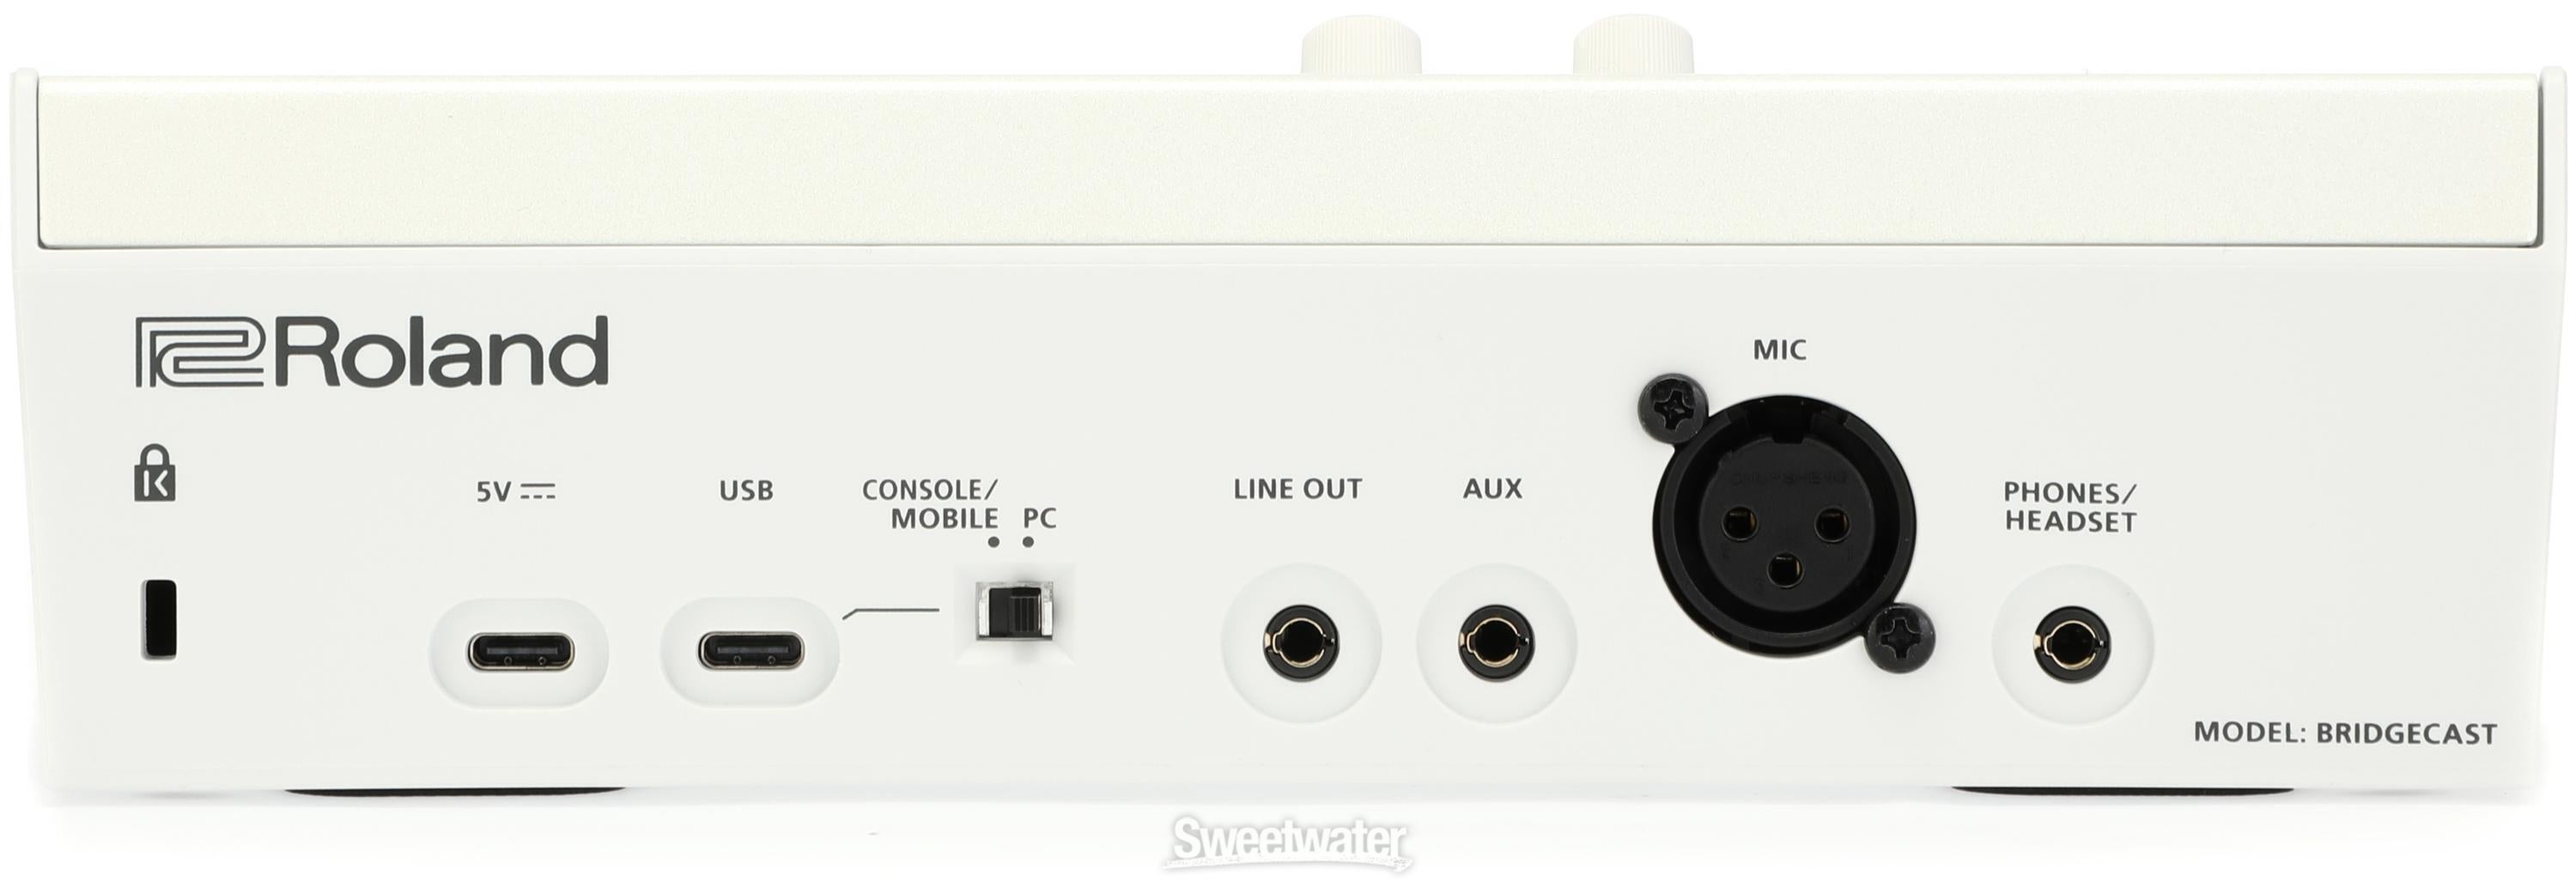 Roland Bridge Cast Dual-bus Gaming Audio Mixer - Ice White 